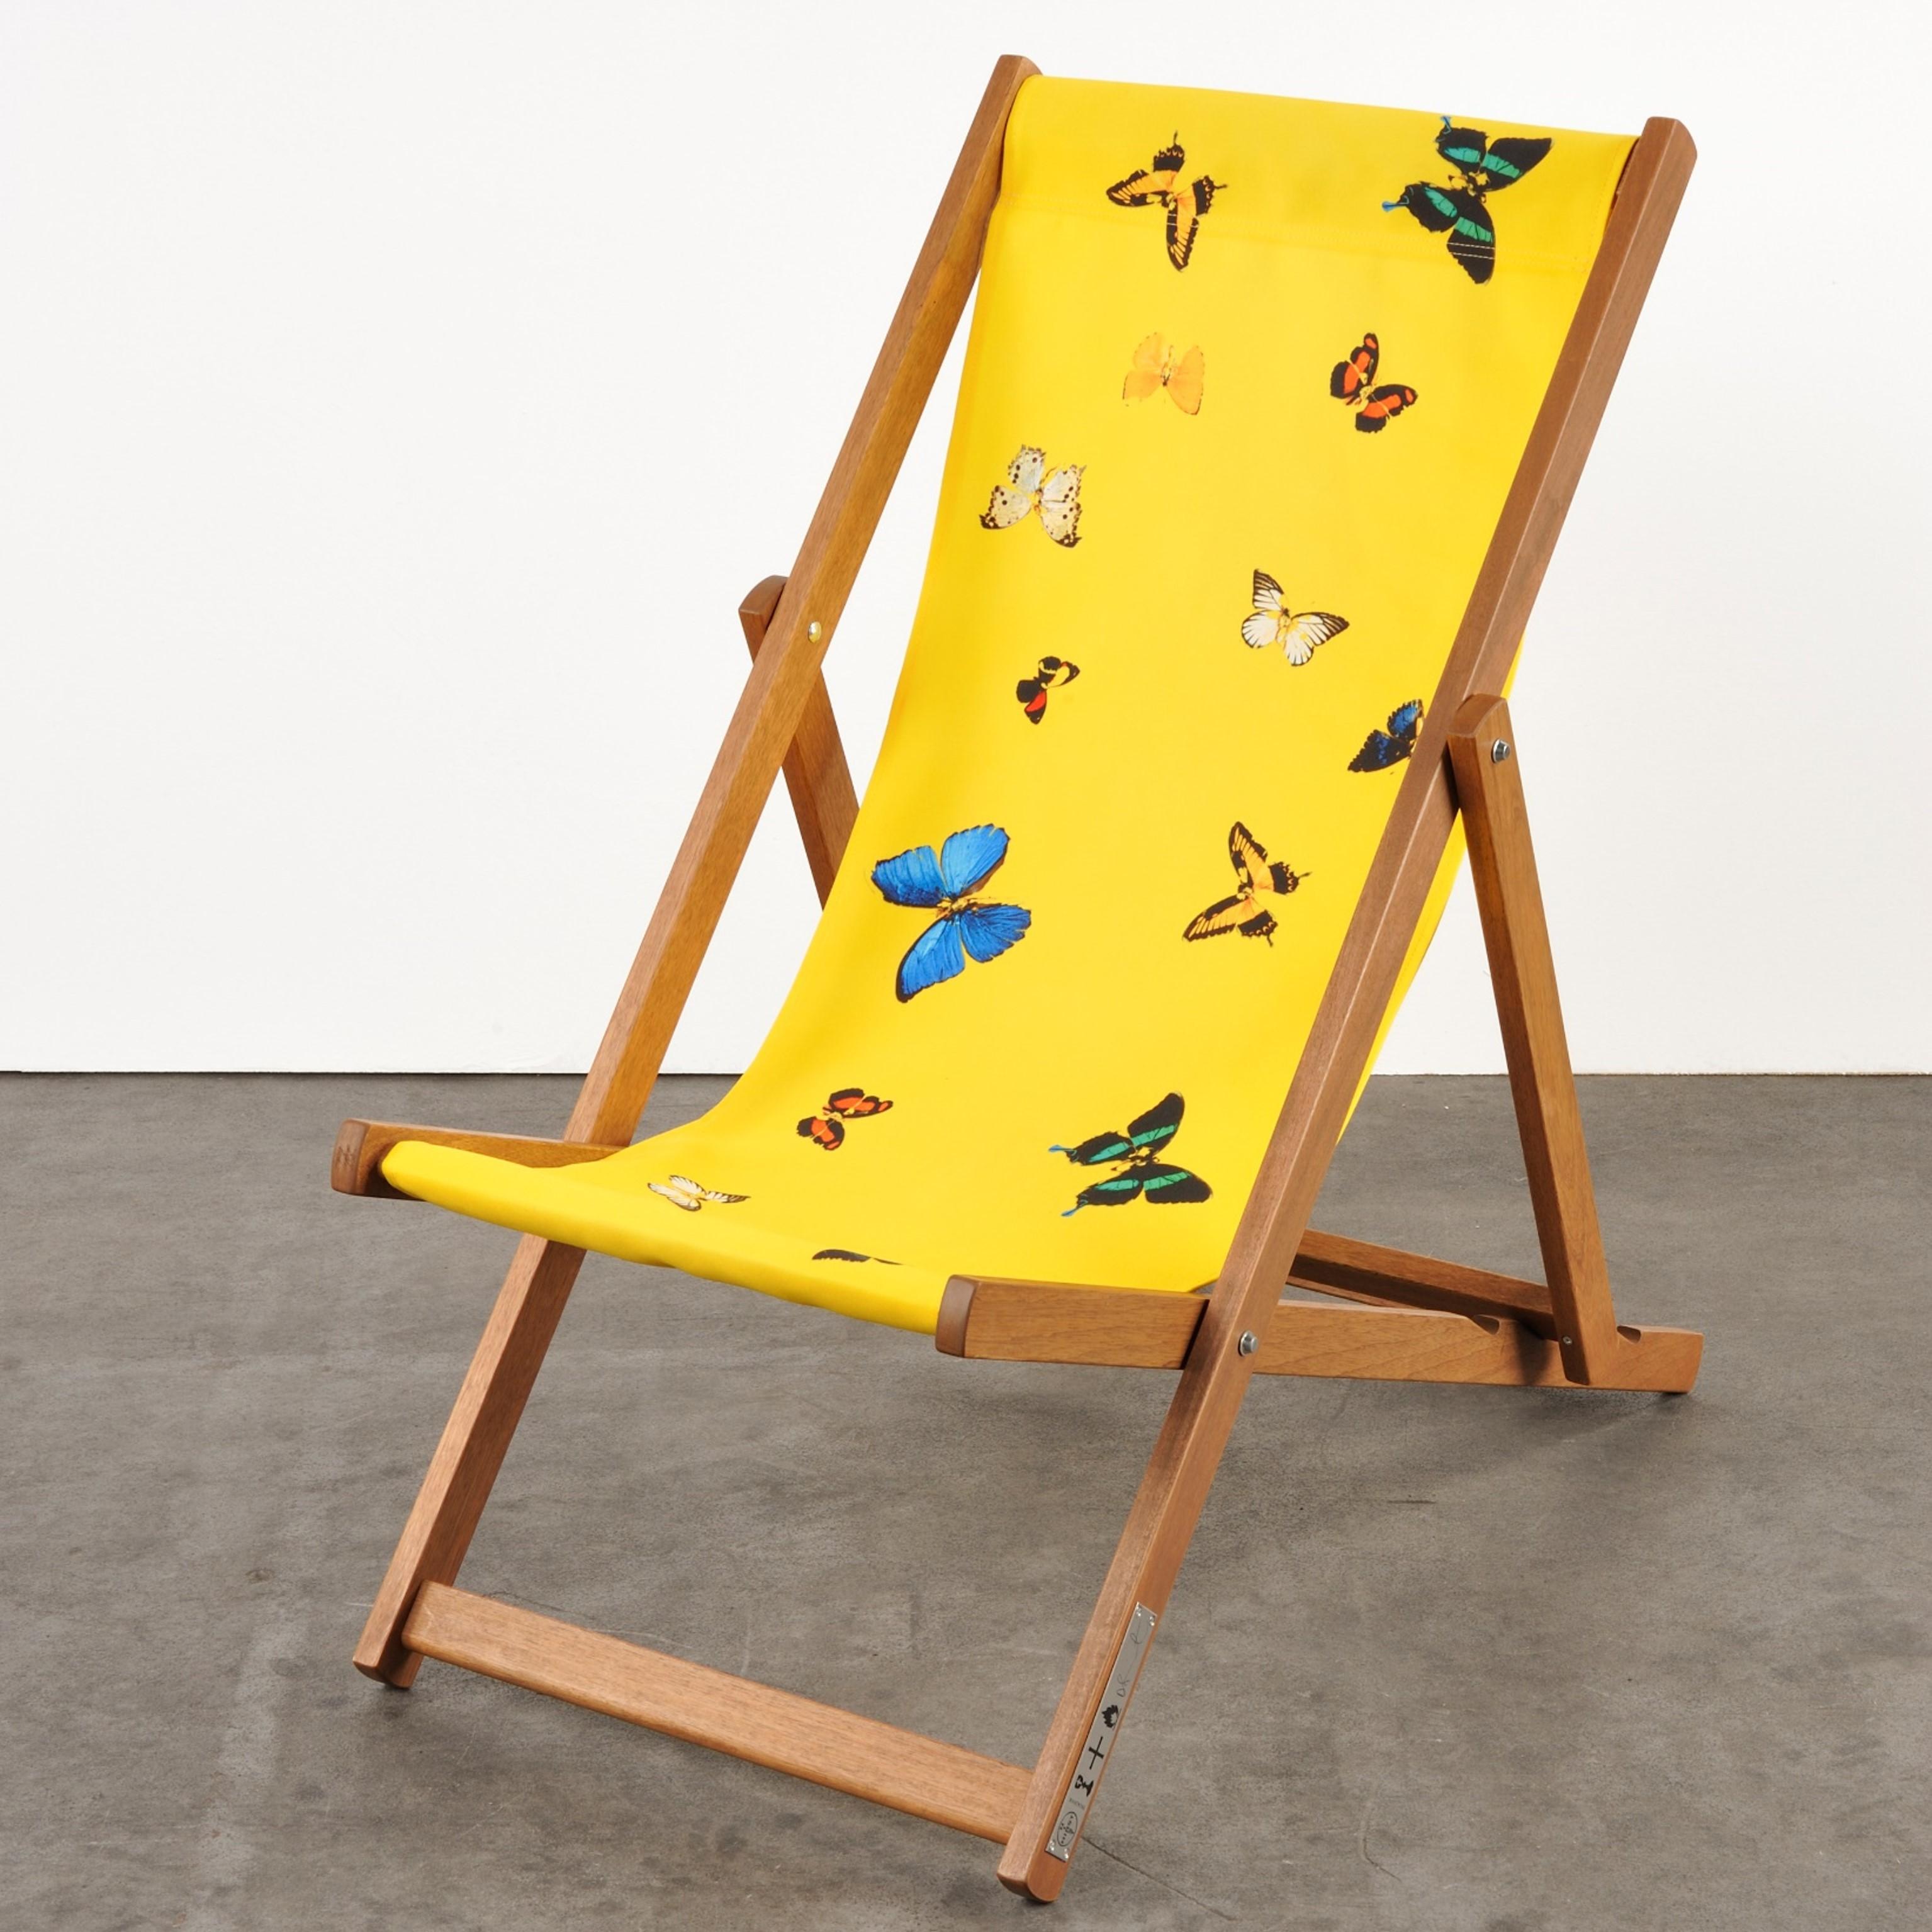 Les Deckchairs de Hirst reprennent l'un des motifs familiers de l'artiste : un fond monochrome interrompu par un éparpillement de papillons figés dans une position éternelle. 

Damien Hirst
Chaise longue (jaune) - Art contemporain, 21e siècle,